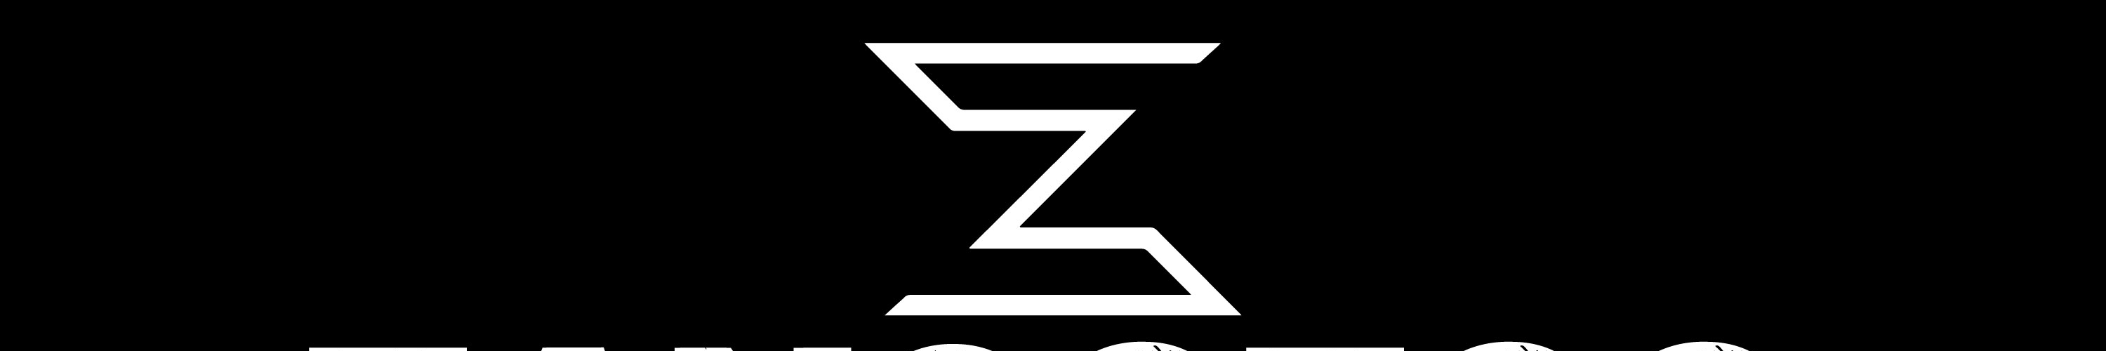 ZangoZoo